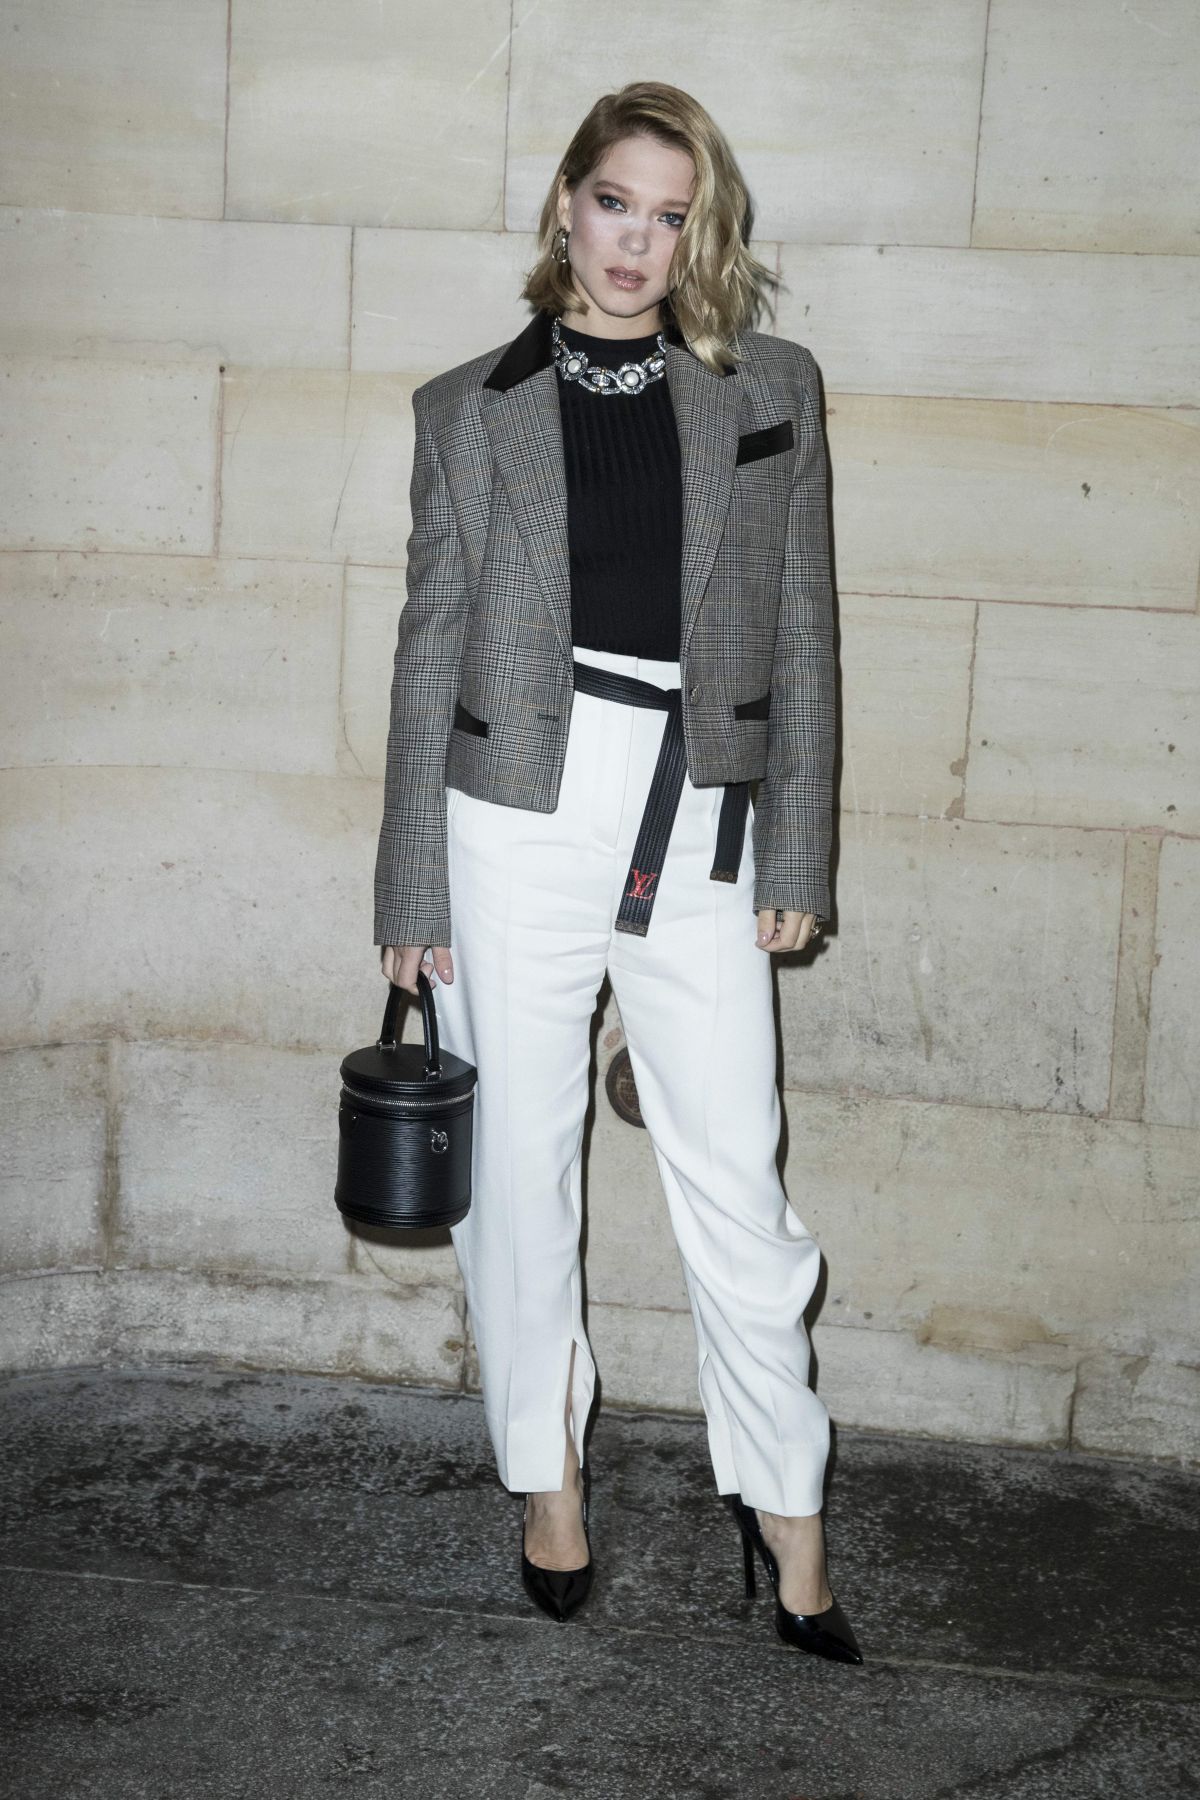 Louis Vuitton – Lea Seydoux